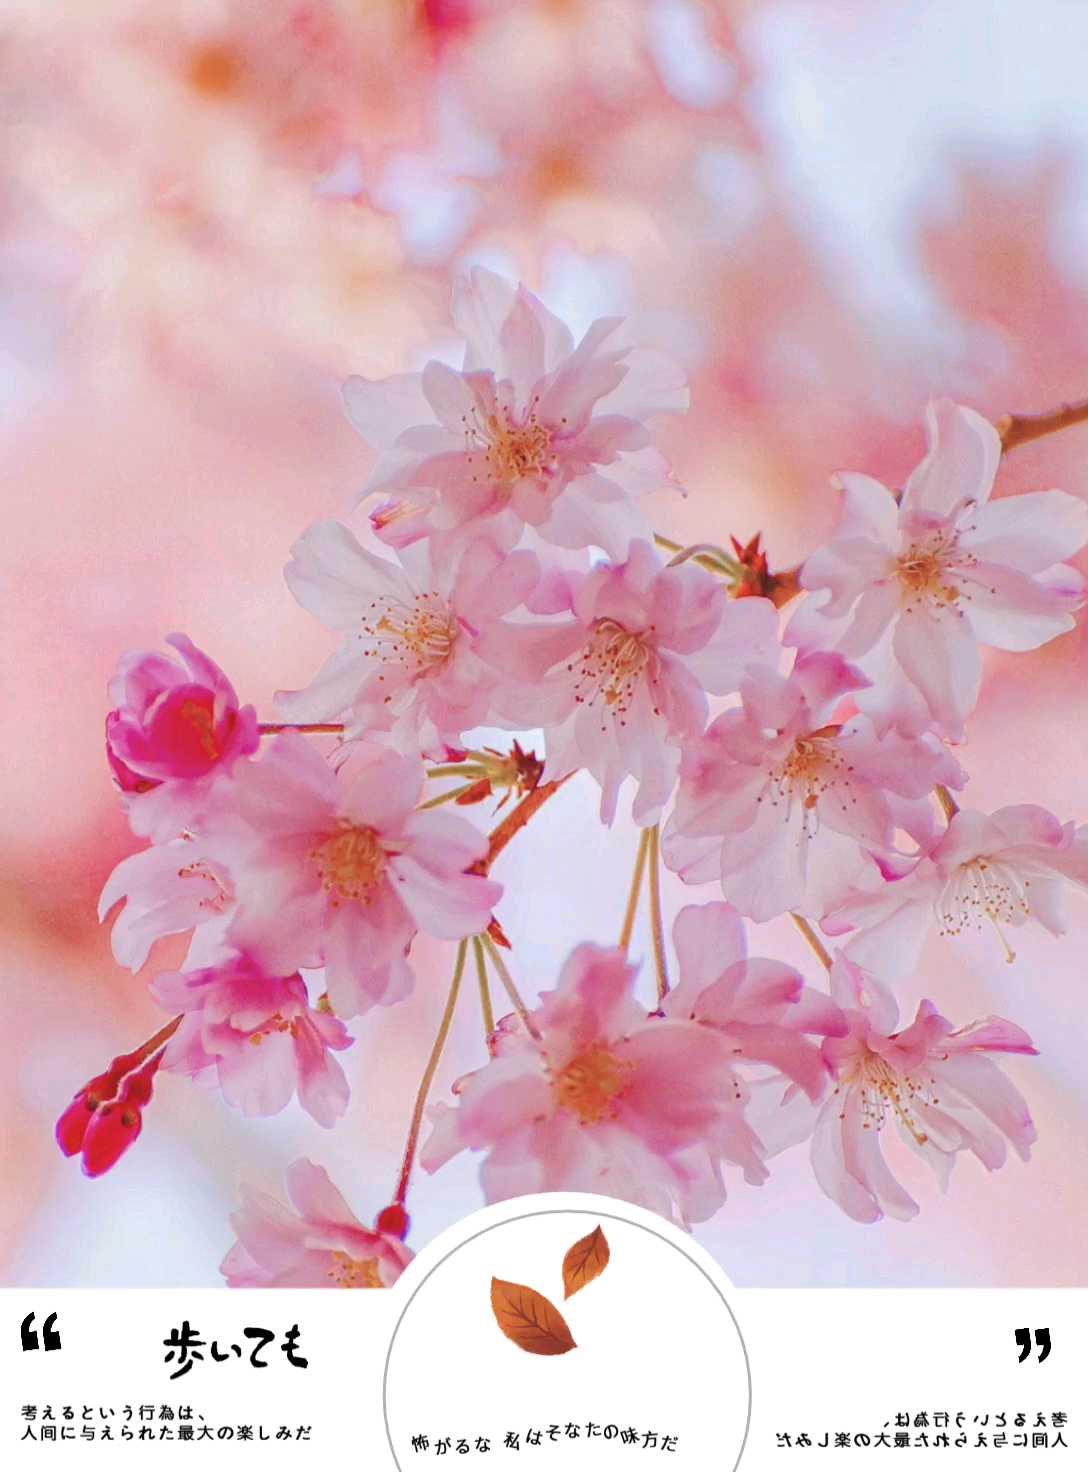 日本赏樱——长野高远城址公园